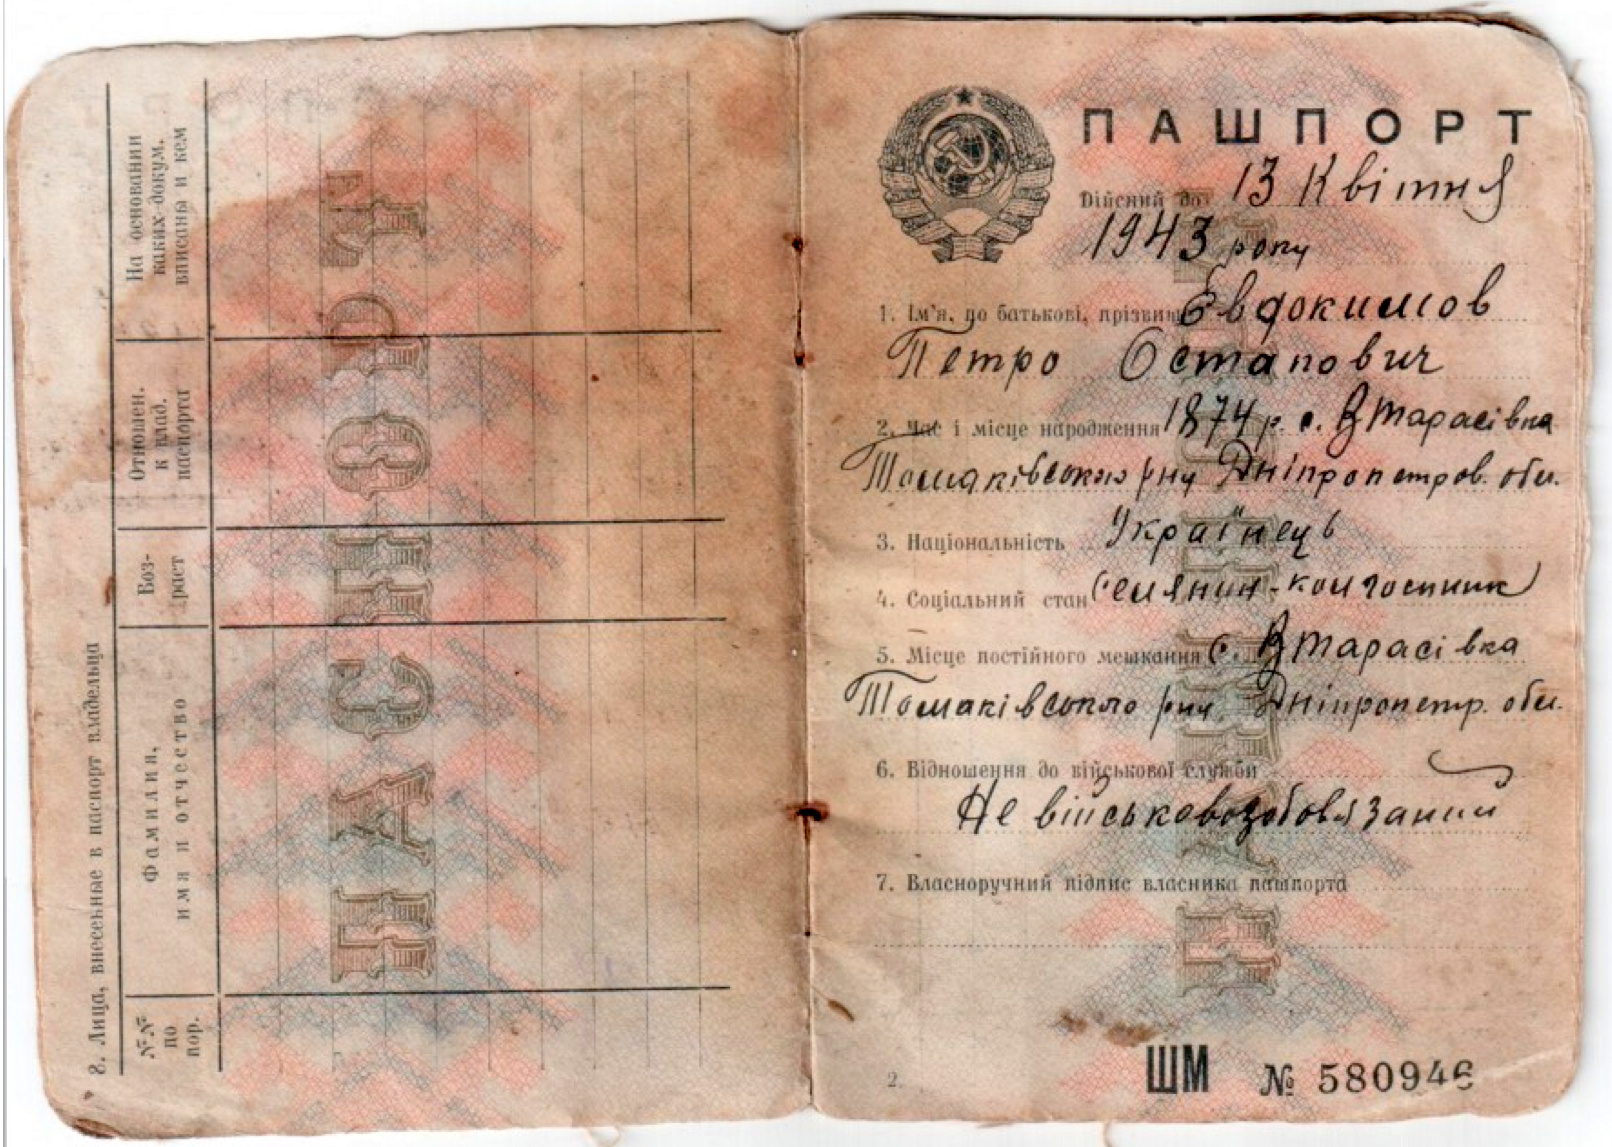 В каком году была введена паспортная система